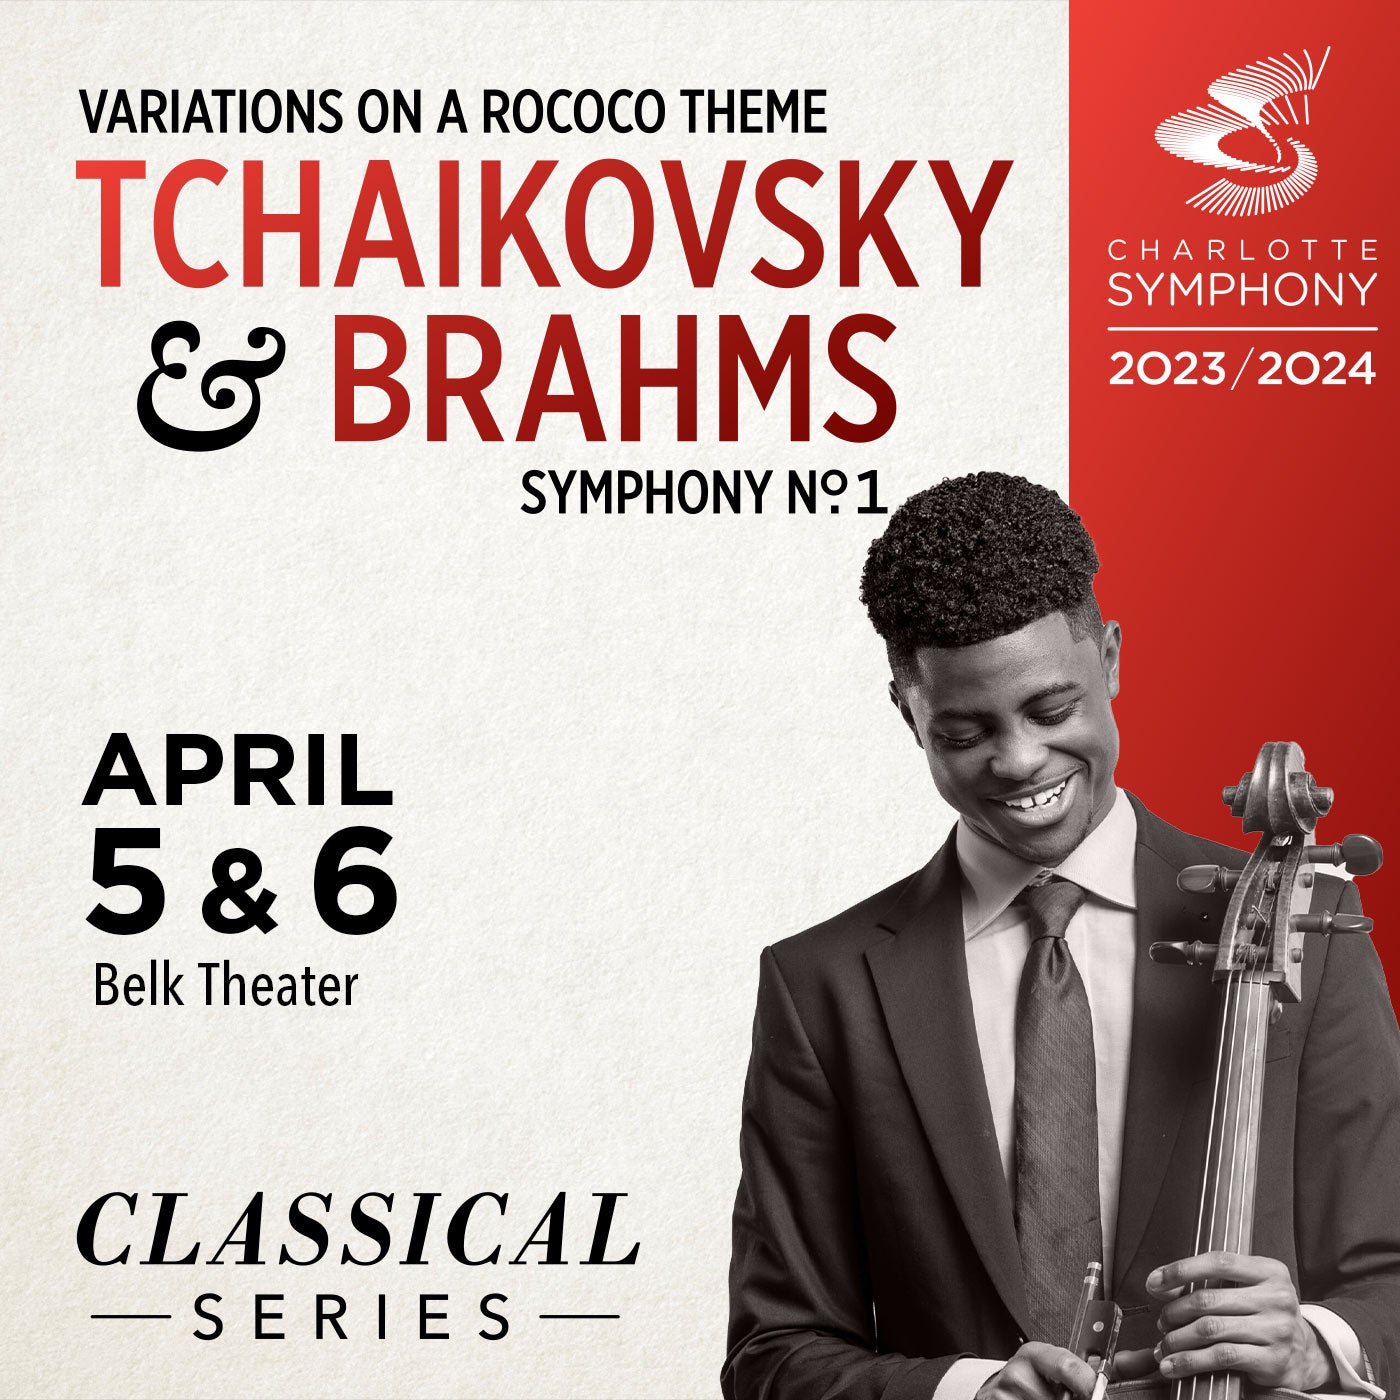 Charlotte Symphony: Tchaikovsky and Brahms